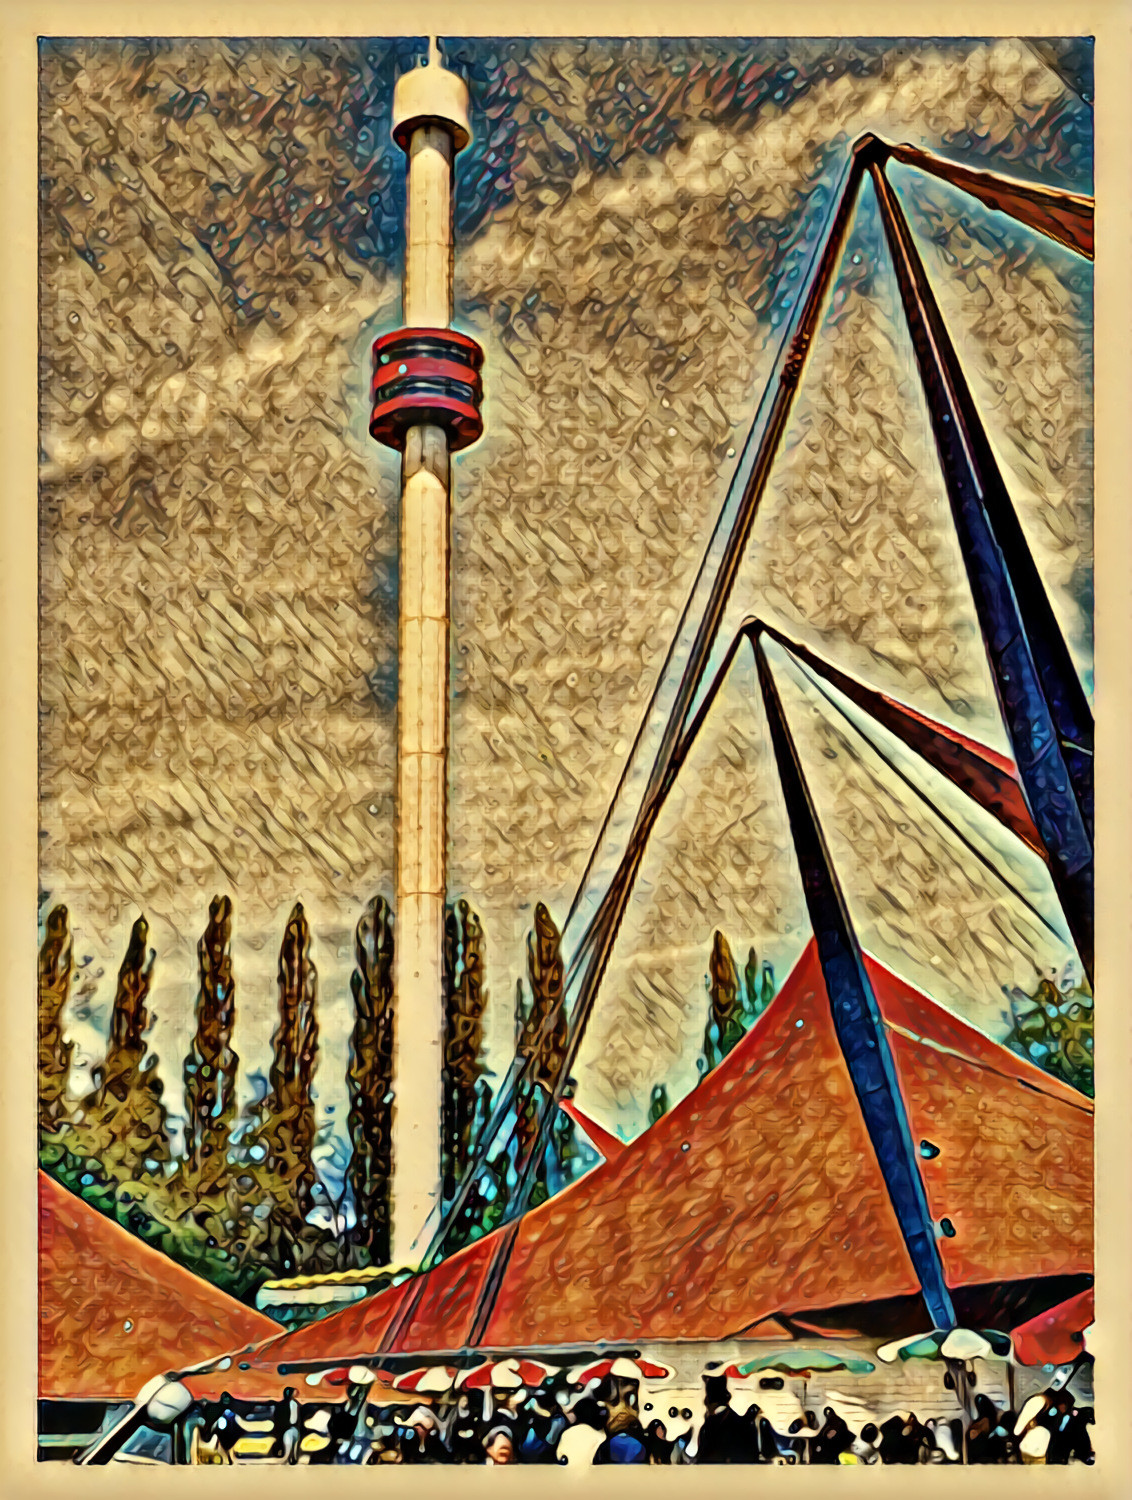 Tower of La Ronde, Expo 67 (Montreal) / Essay No.2